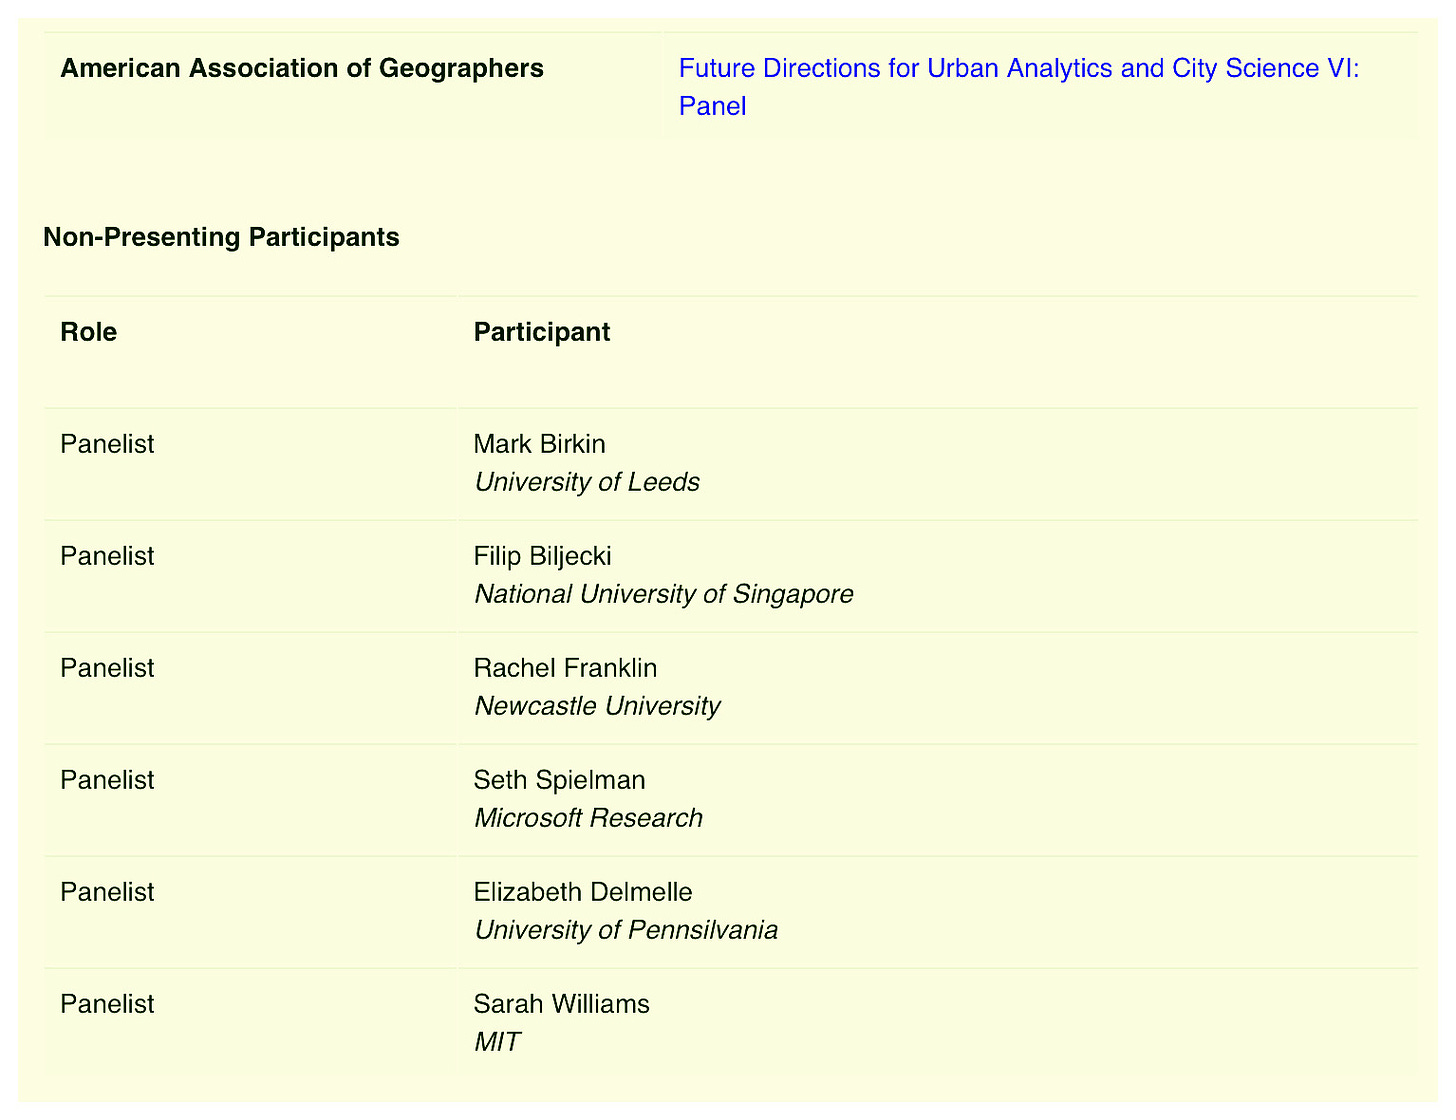 Screenshot of the urban analytics panel line up